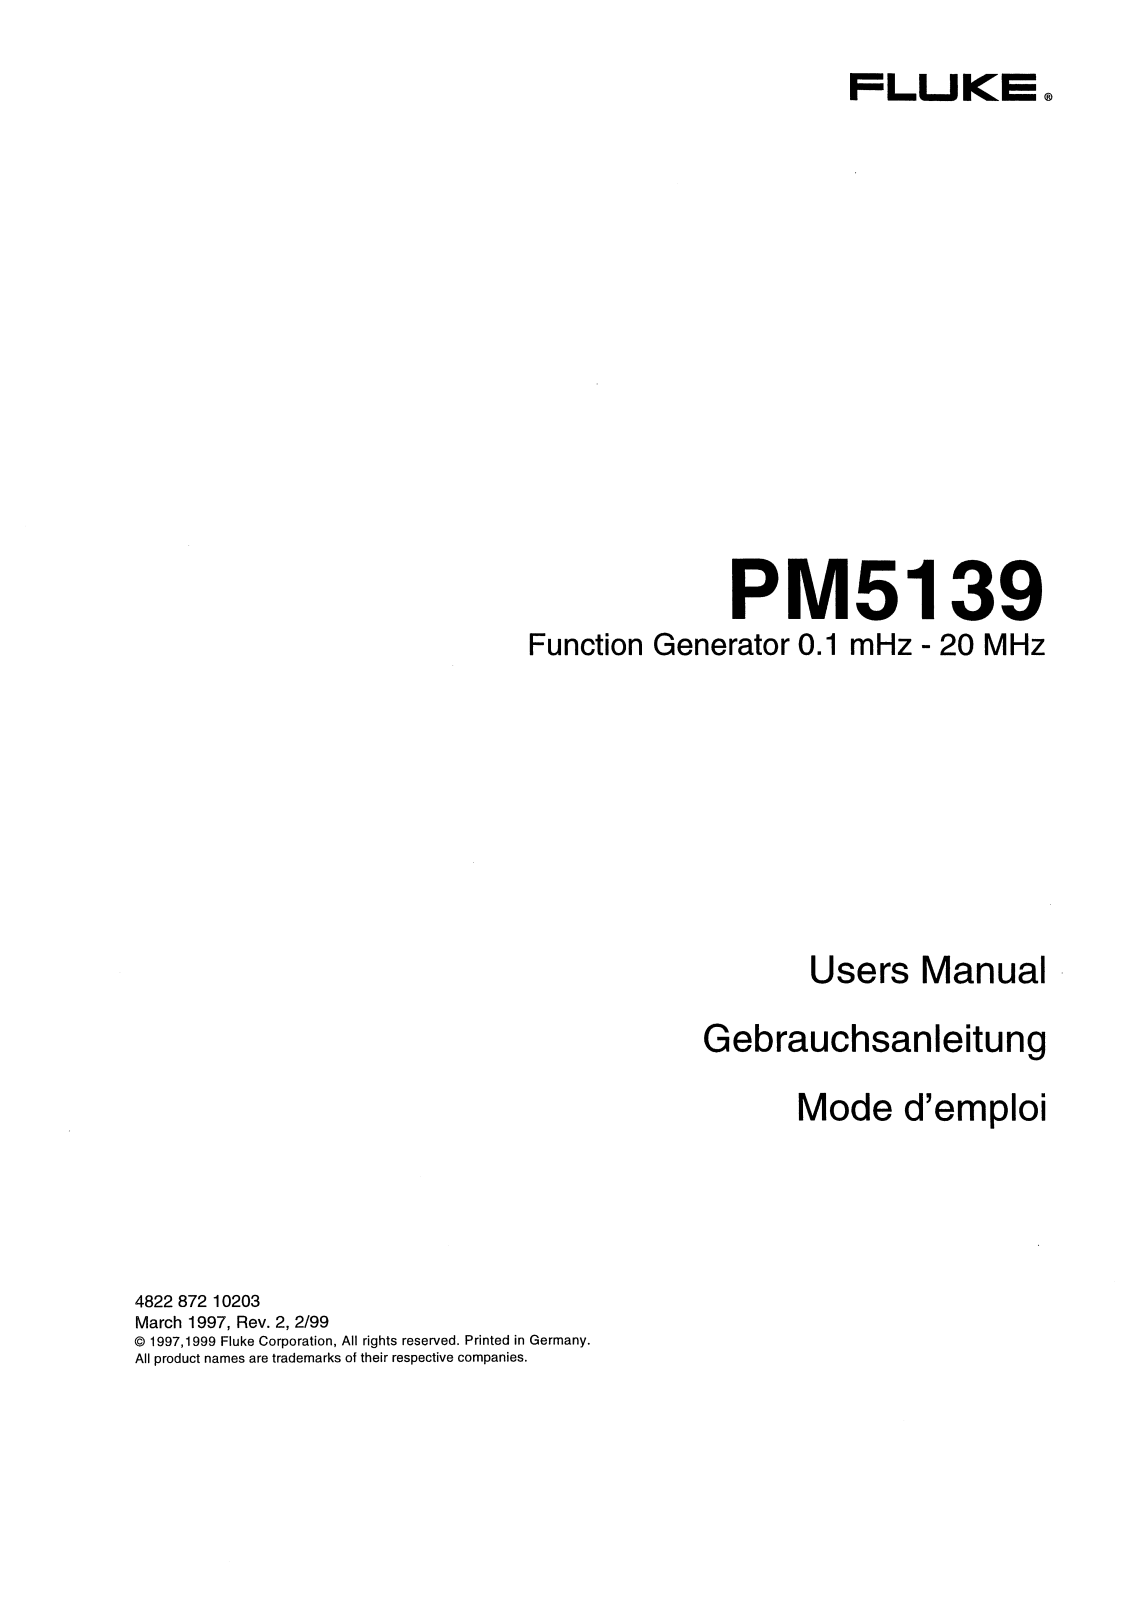 Fluke PM5139 User Manual